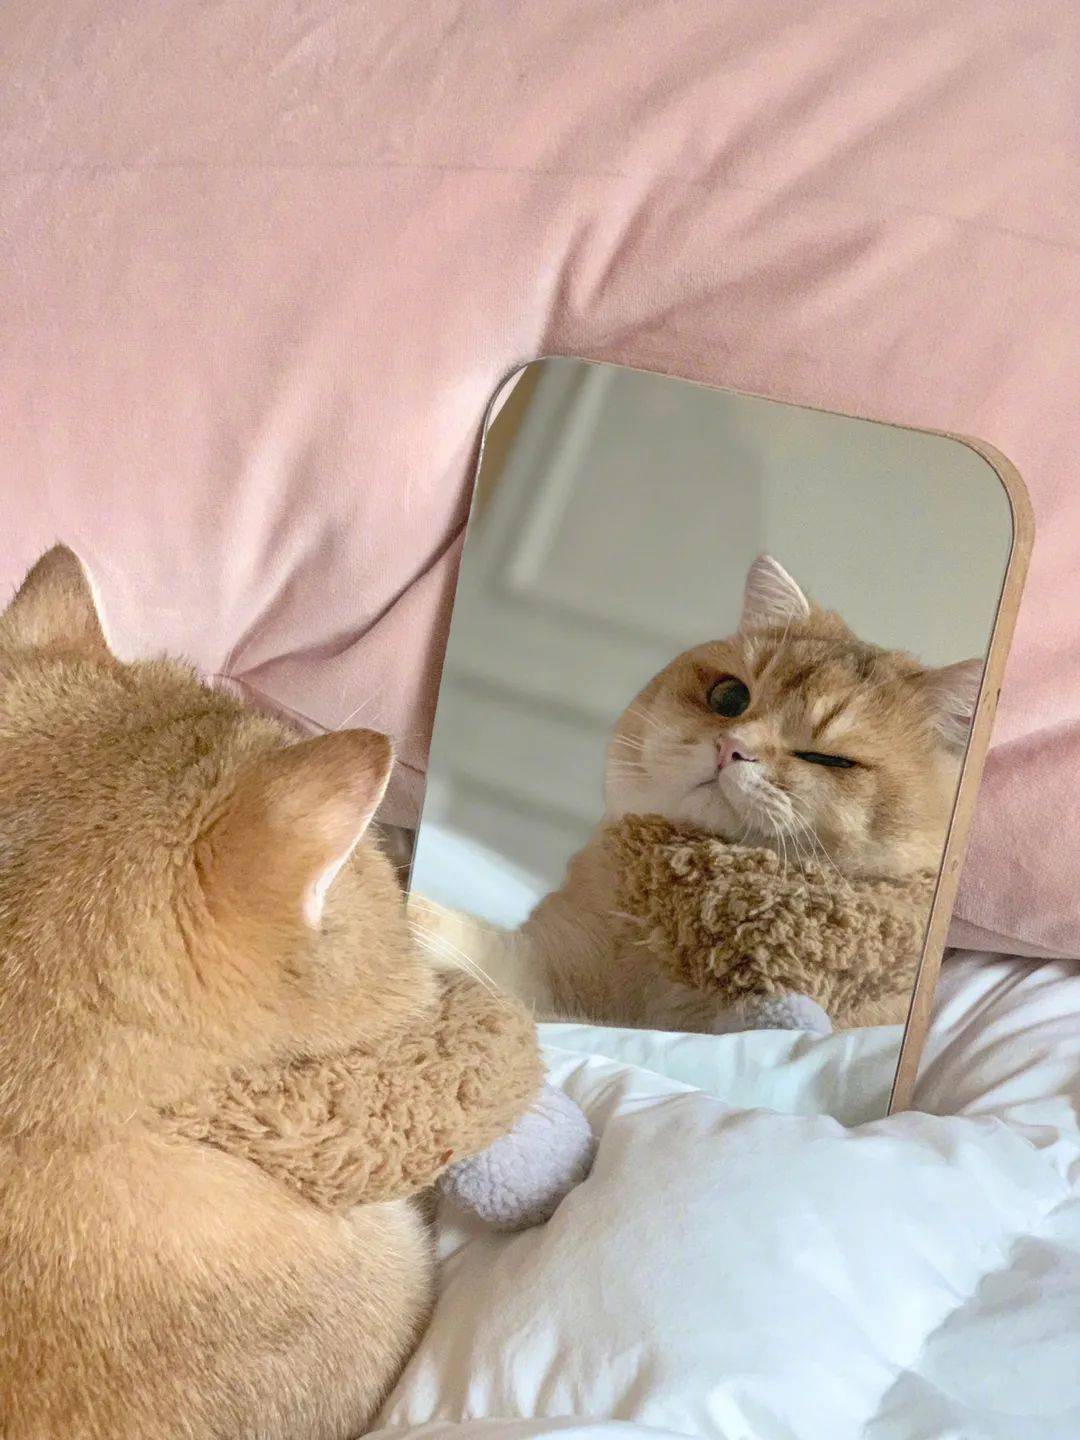 自恋猫咪照镜子,被镜子中的自己帅到了!_帅醒_by_圆脸